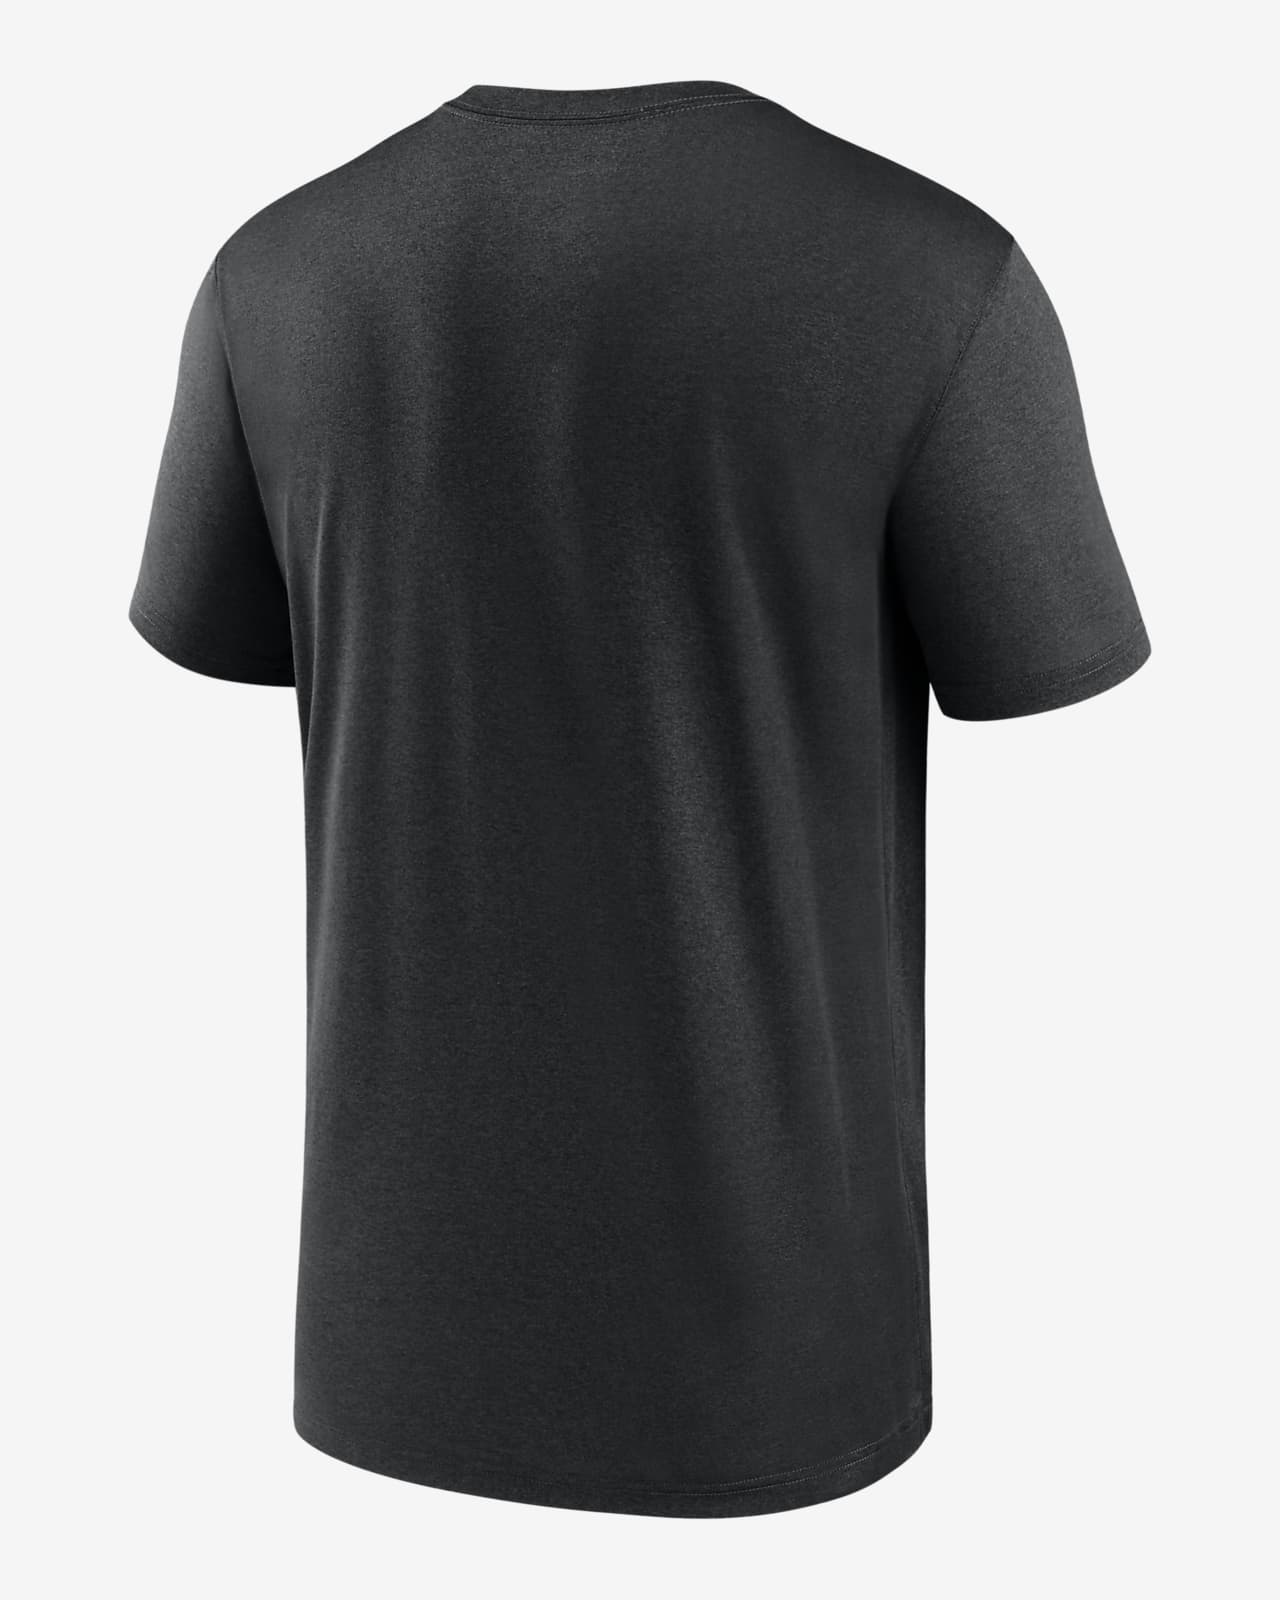 Nike Dri-FIT Legend Wordmark (MLB Miami Marlins) Men's T-Shirt.